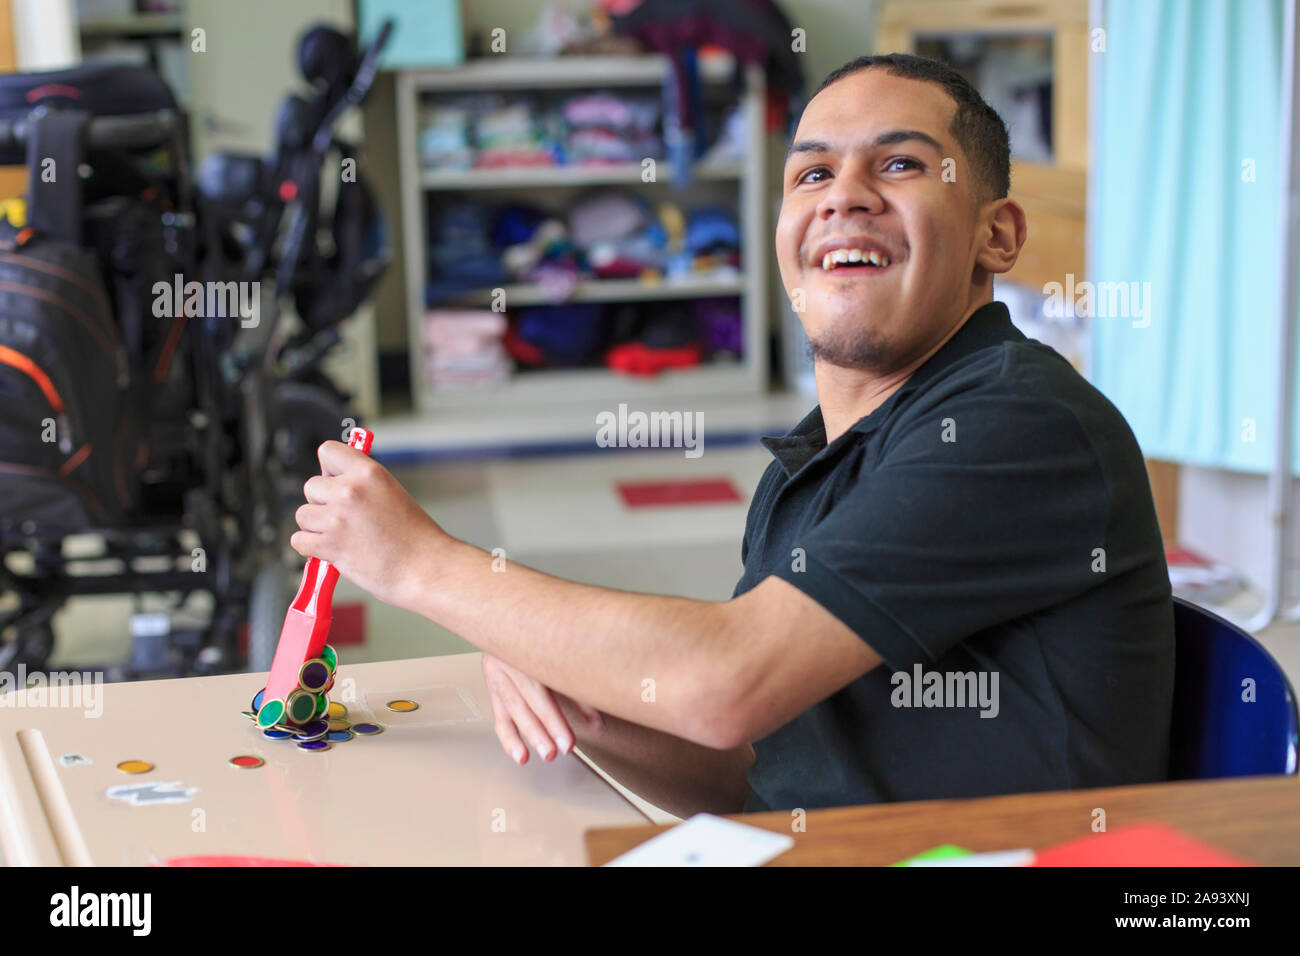 Garçon avec spastique quadriplégique cérébral Palsy apprenant à l'école Banque D'Images